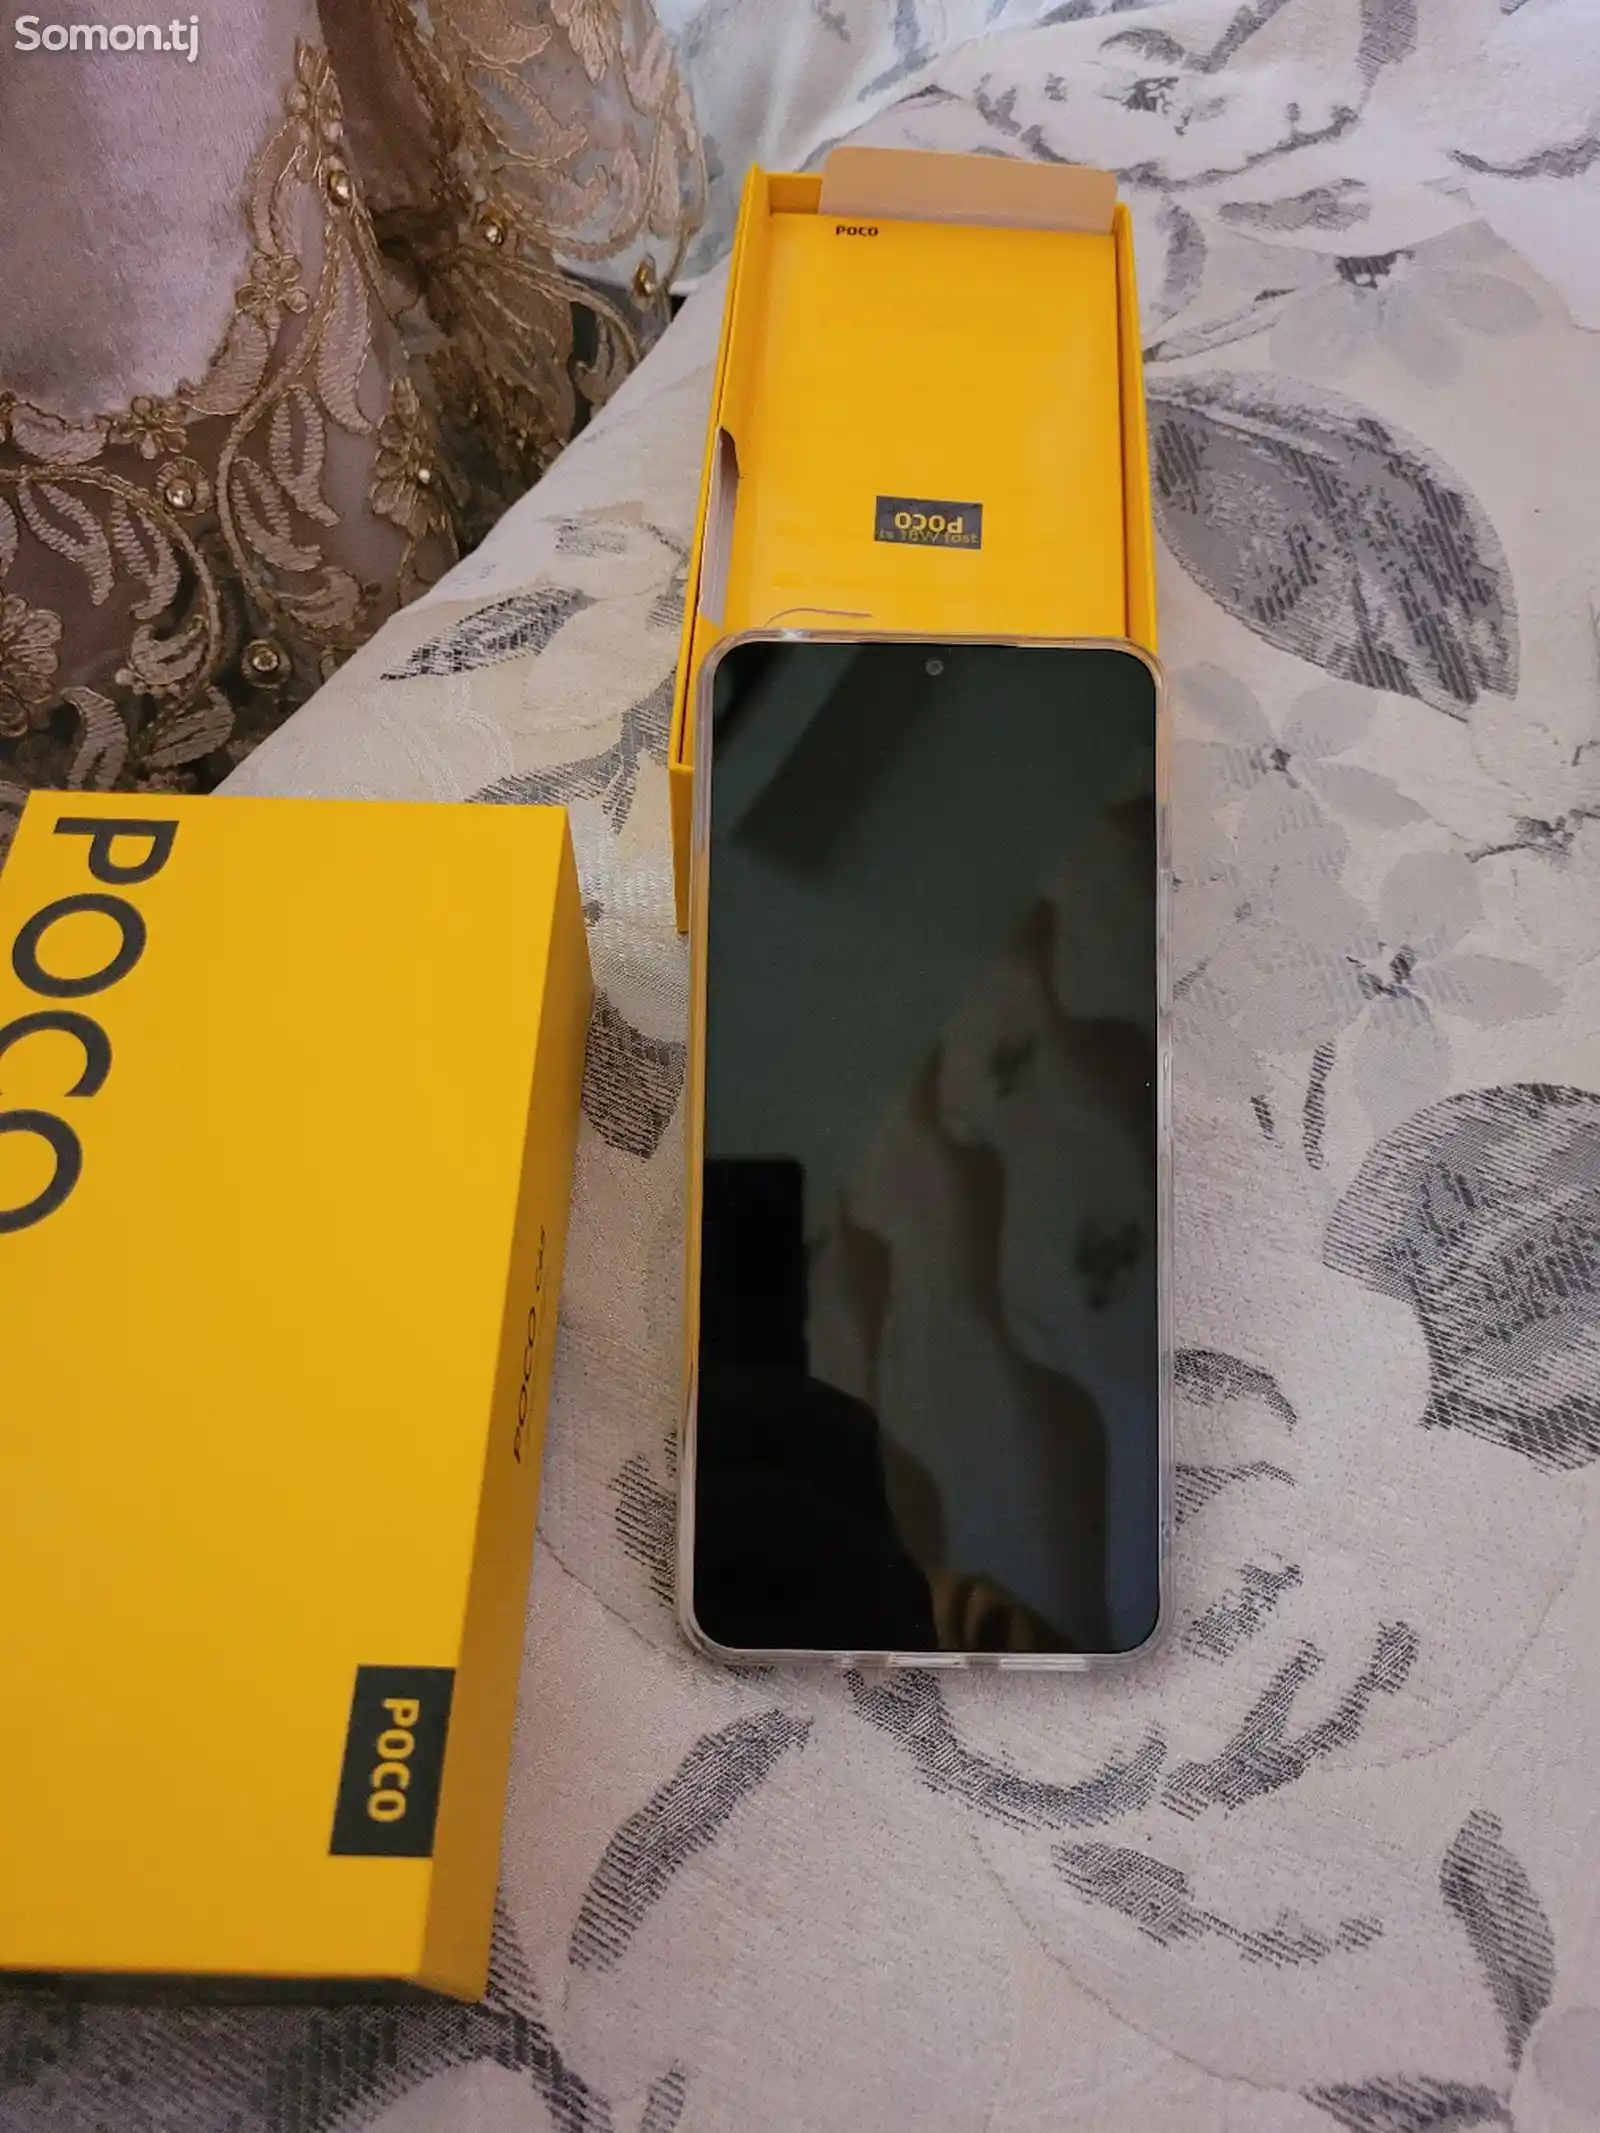 Xiaomi Poco C65-1